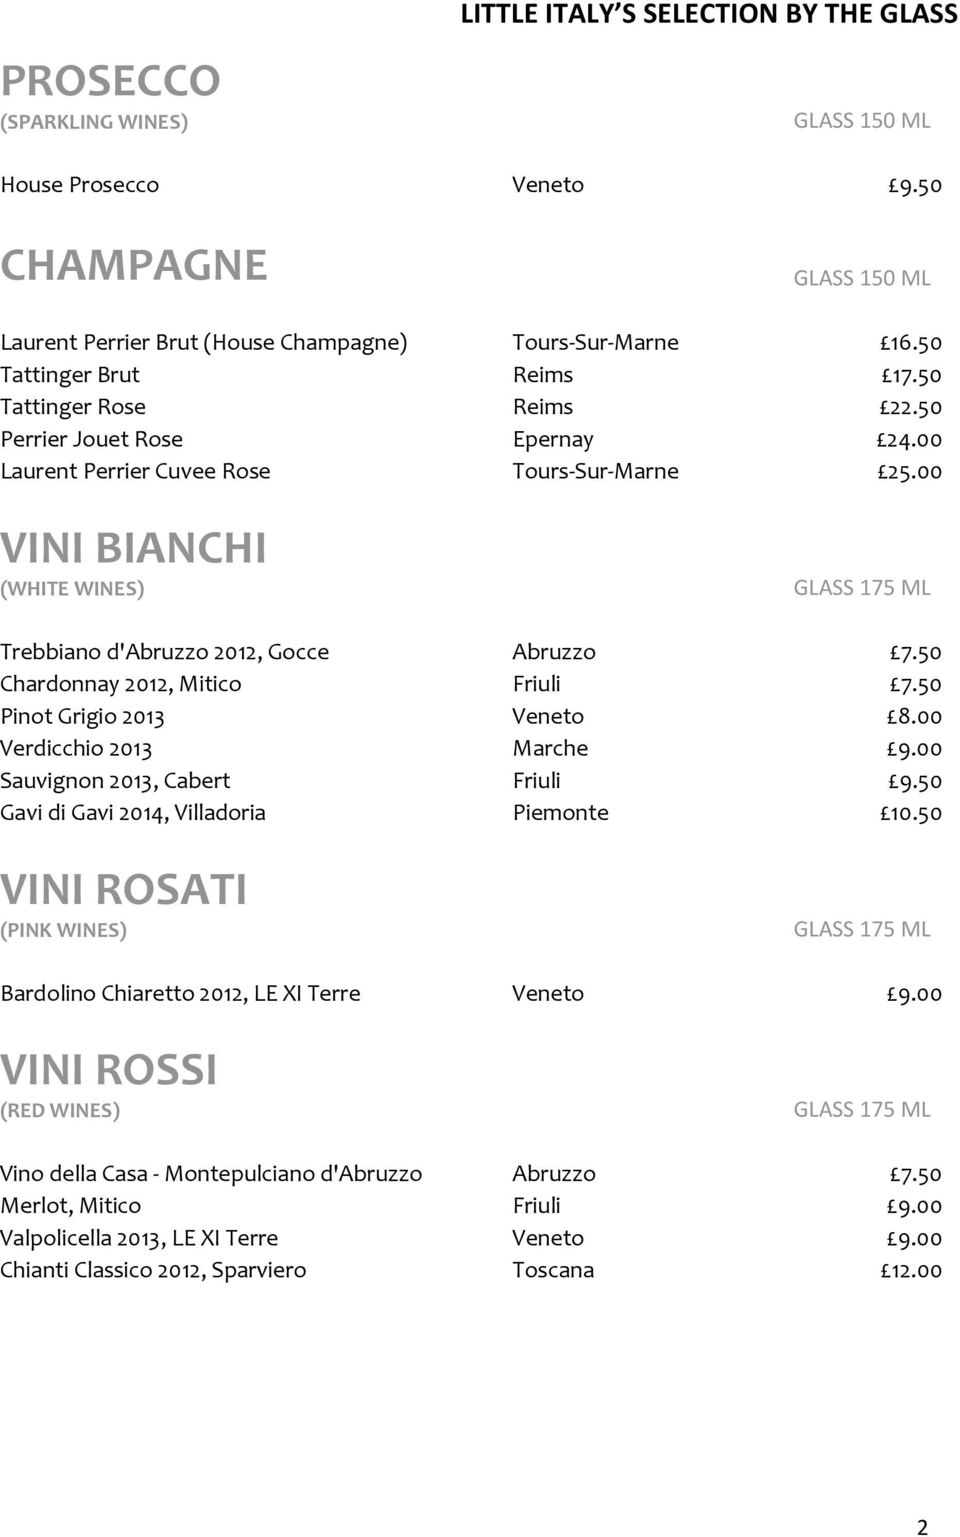 00 VINI BIANCHI (WHITE WINES) GLASS 175 ML Trebbiano d'abruzzo 2012, Gocce Abruzzo 7.50 Chardonnay 2012, Mitico Friuli 7.50 Pinot Grigio 2013 Veneto 8.00 Verdicchio 2013 Marche 9.